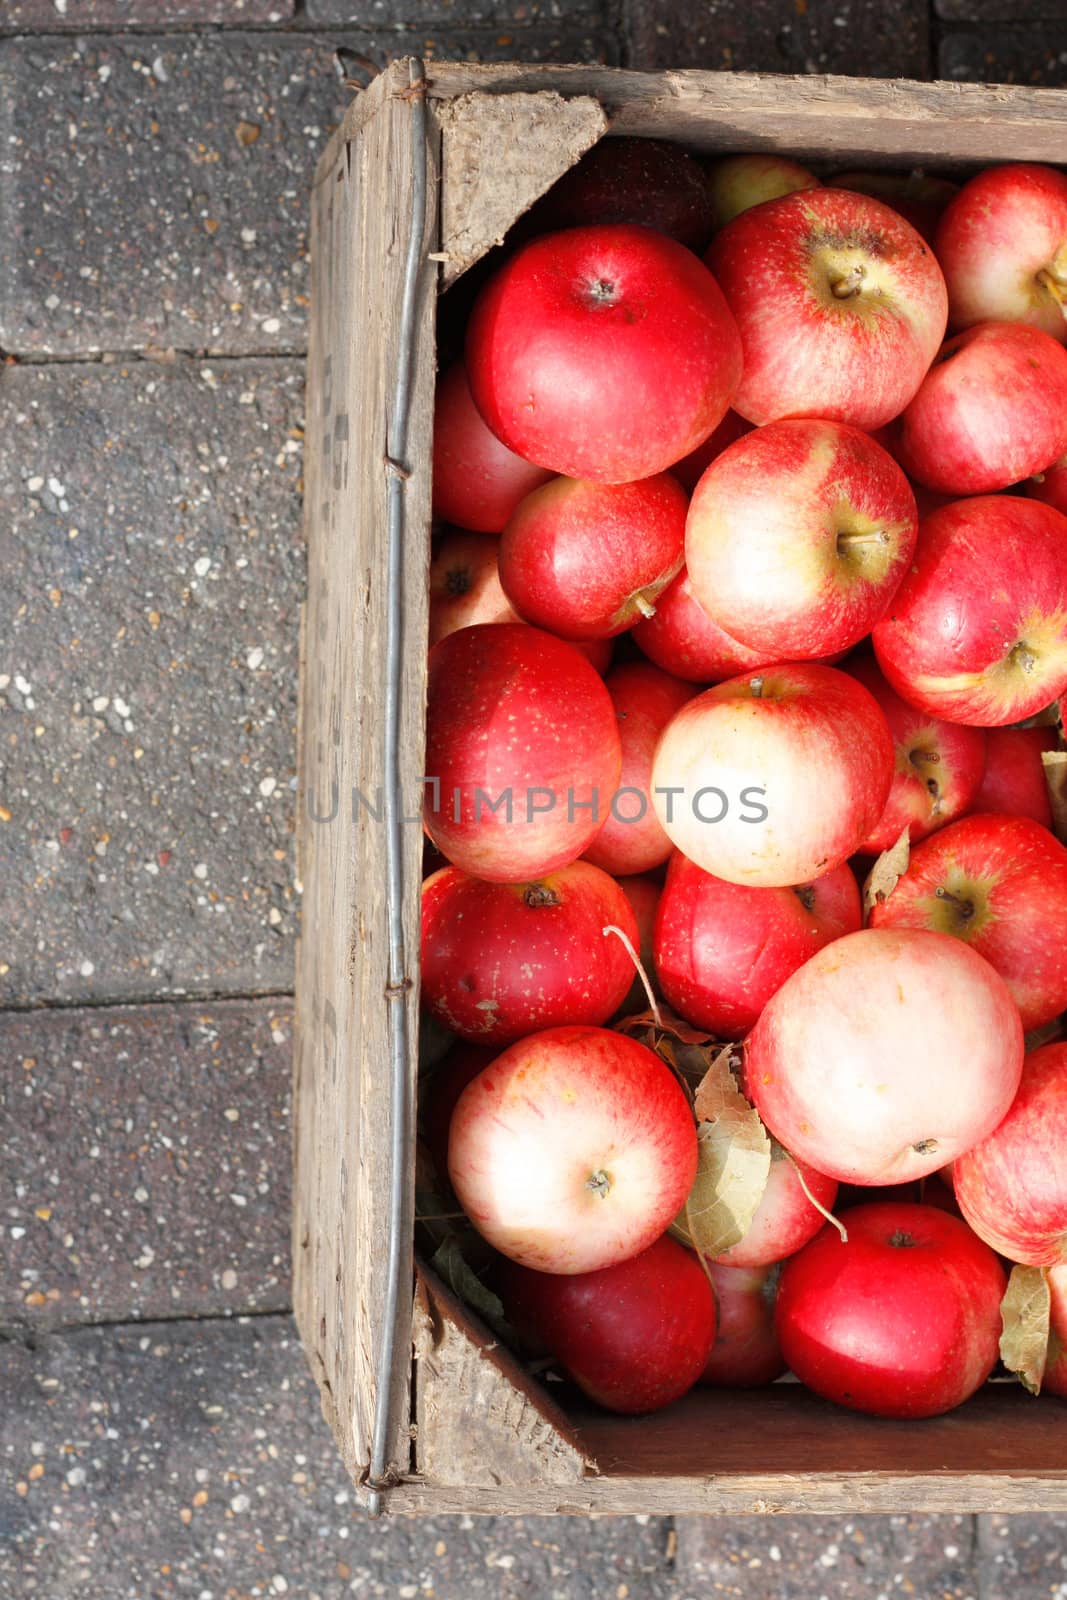 Apples by leeser